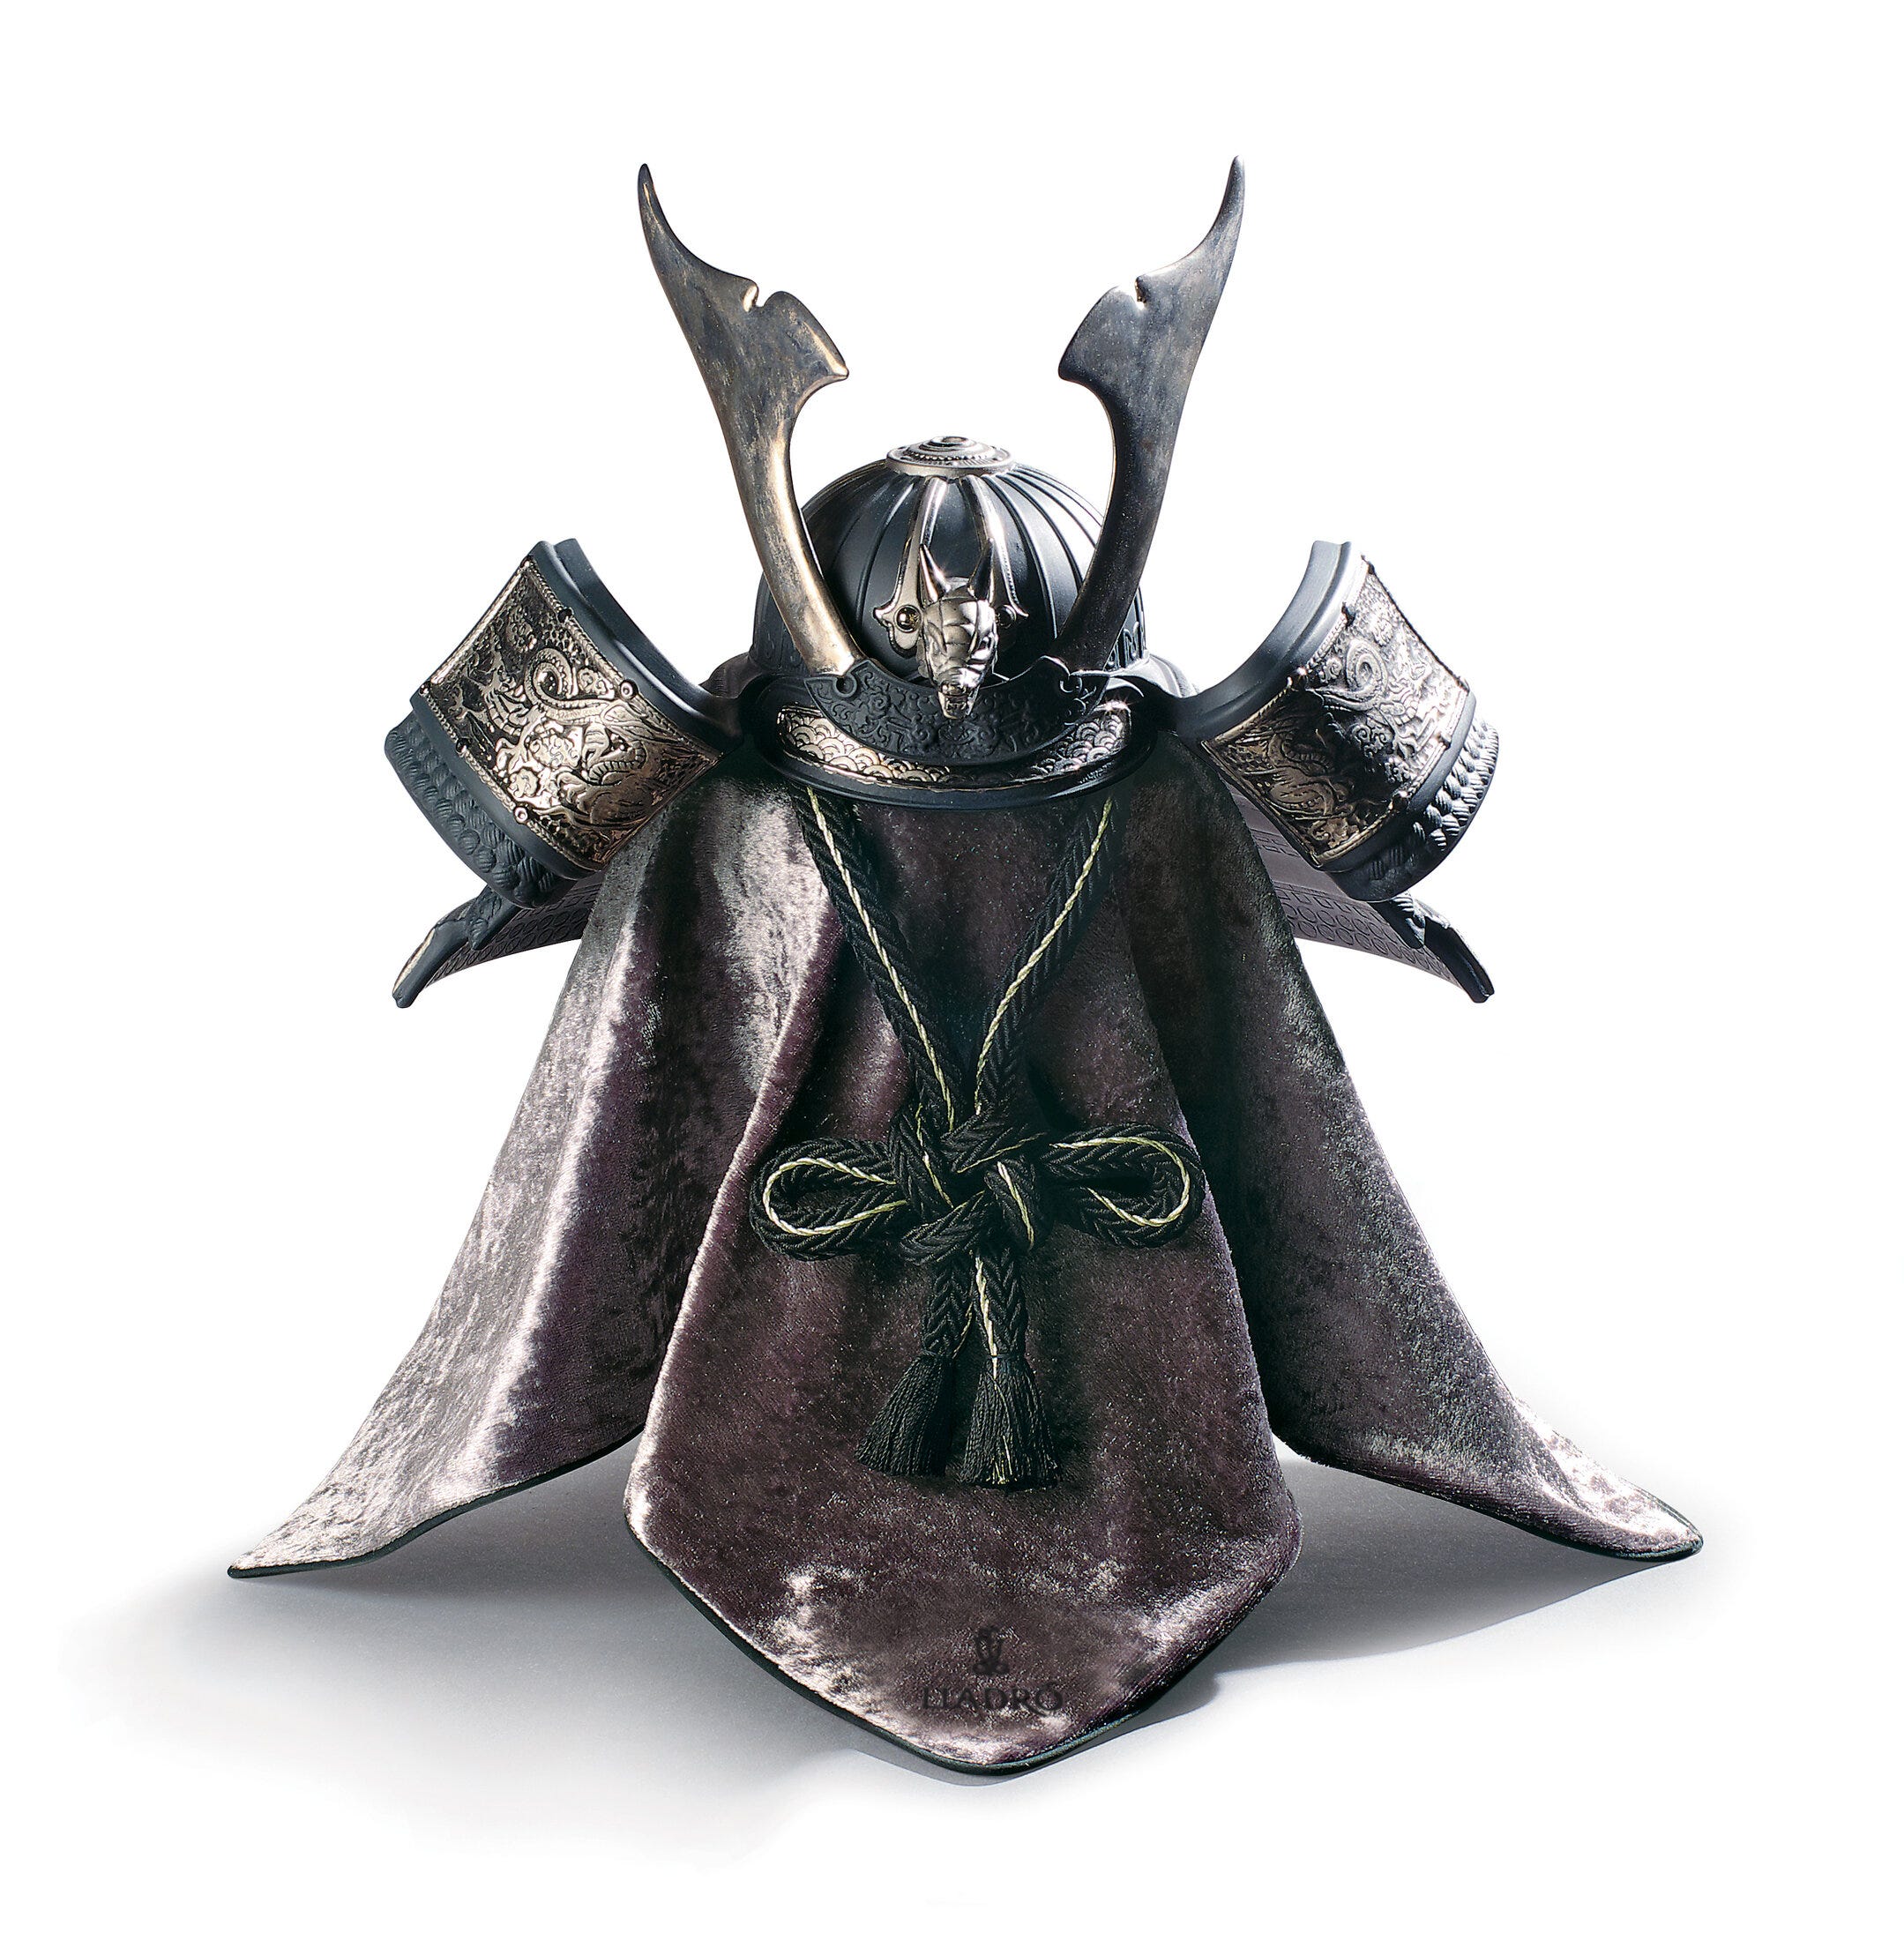 Figurina del casco del drago samurai. Lustro d'argento